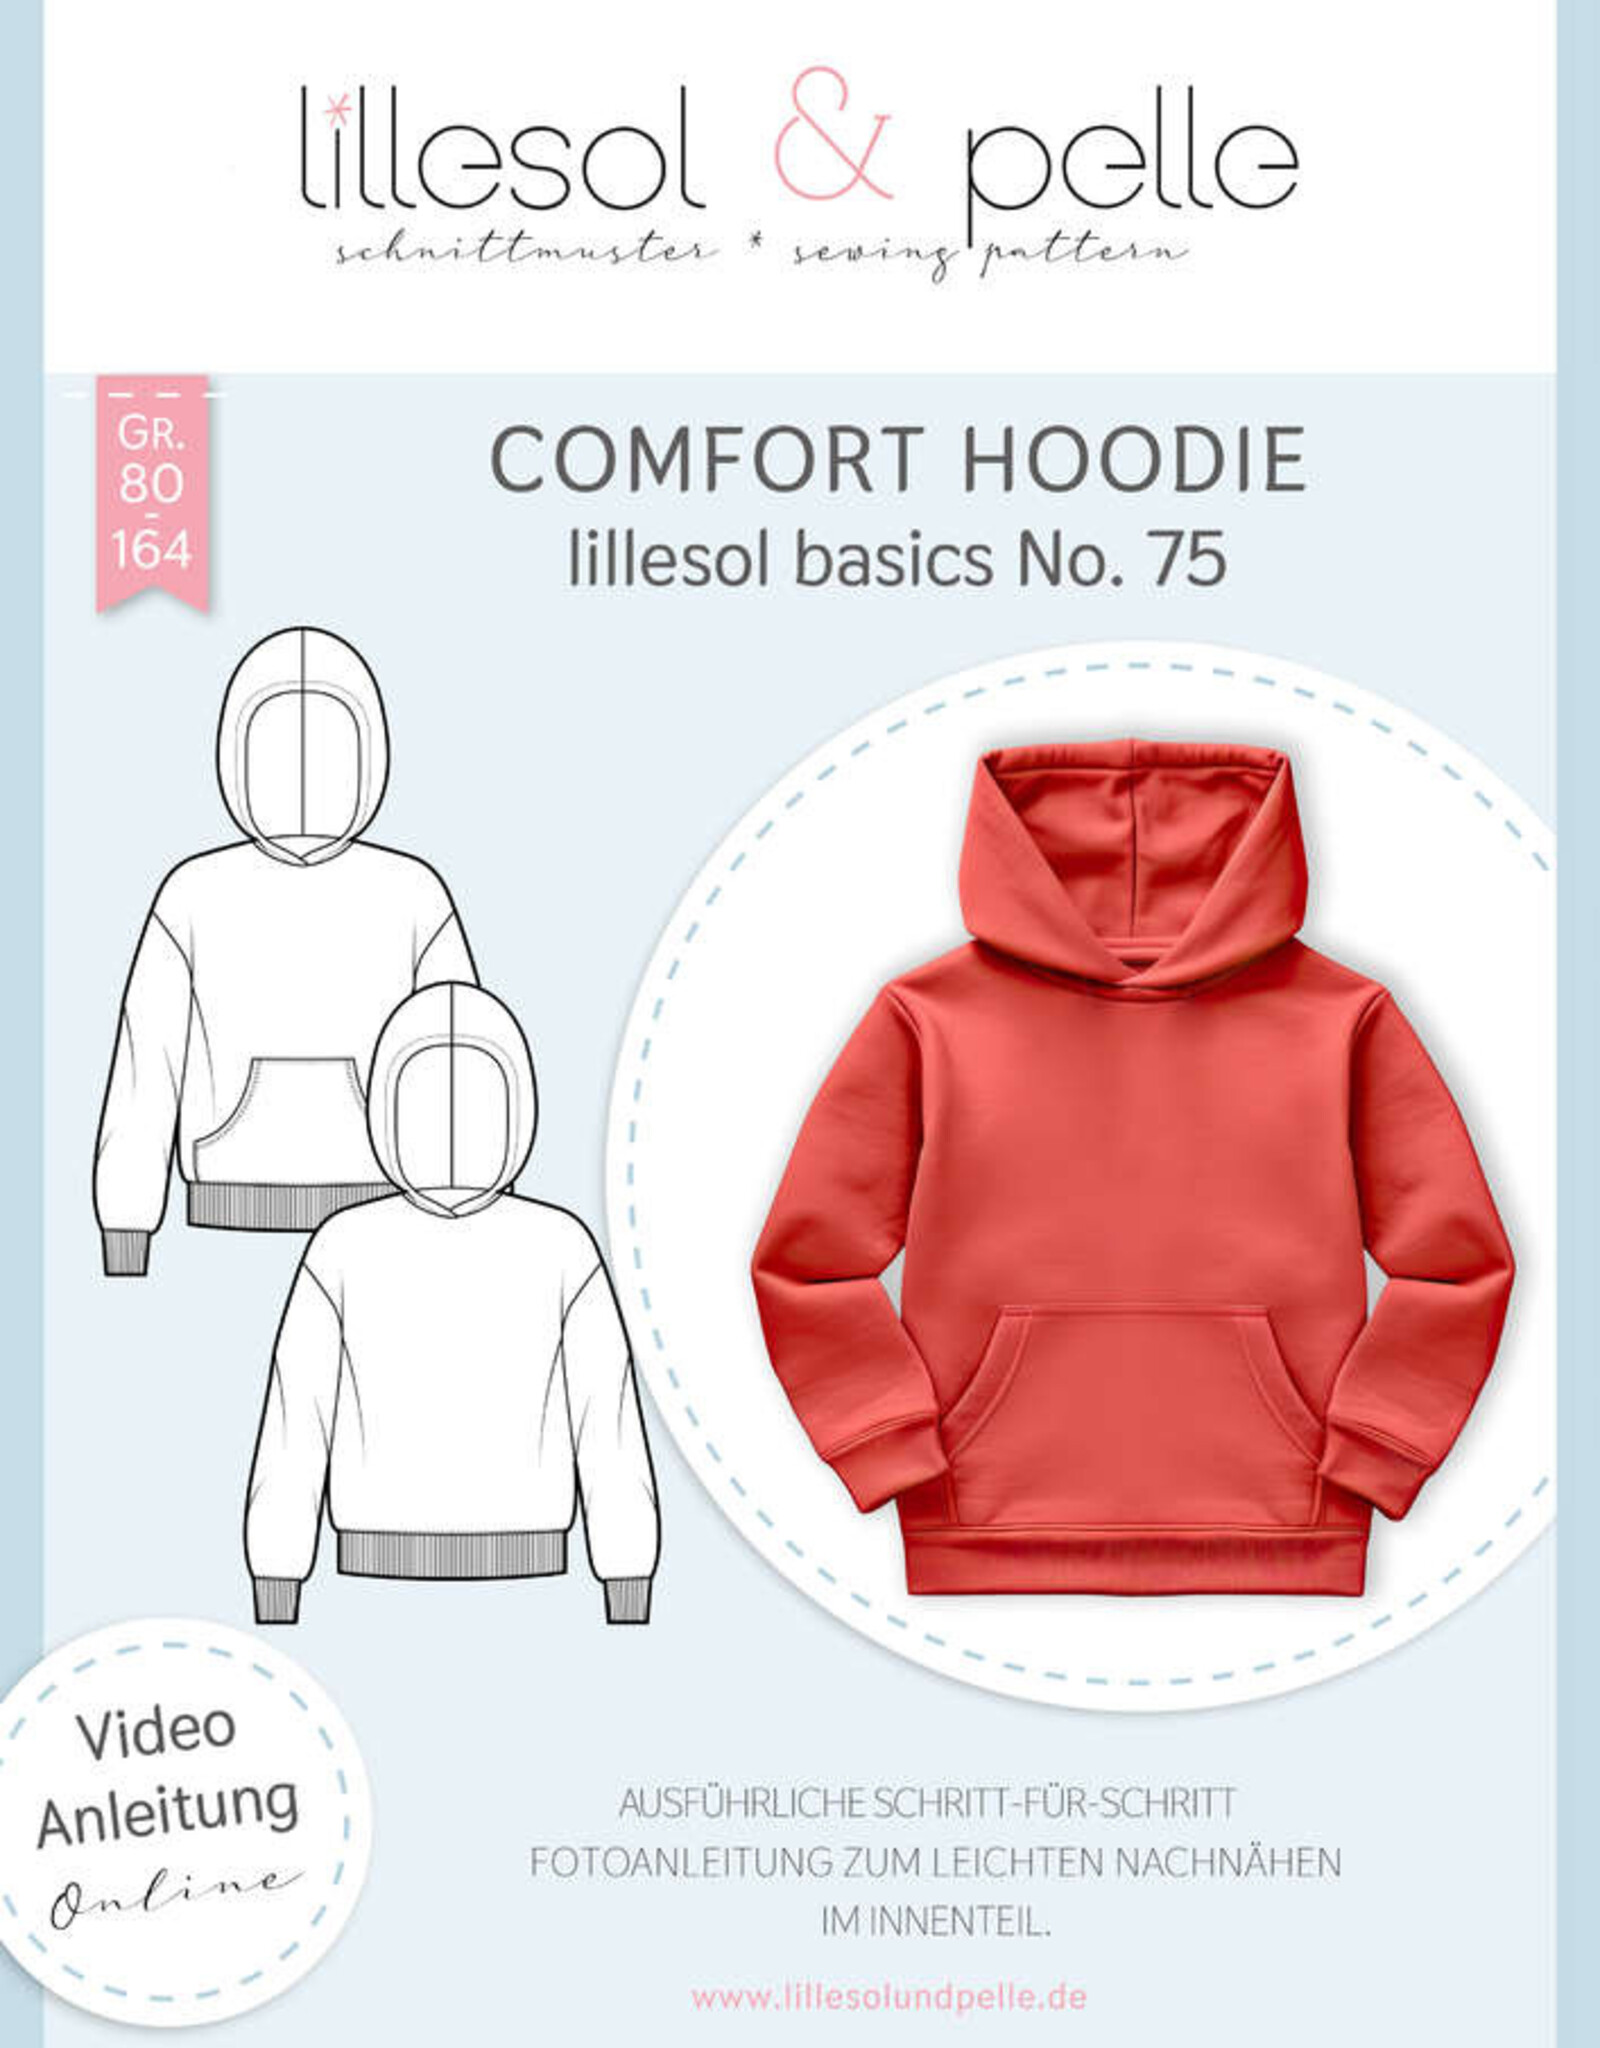 Comfort hoodie kids no 75